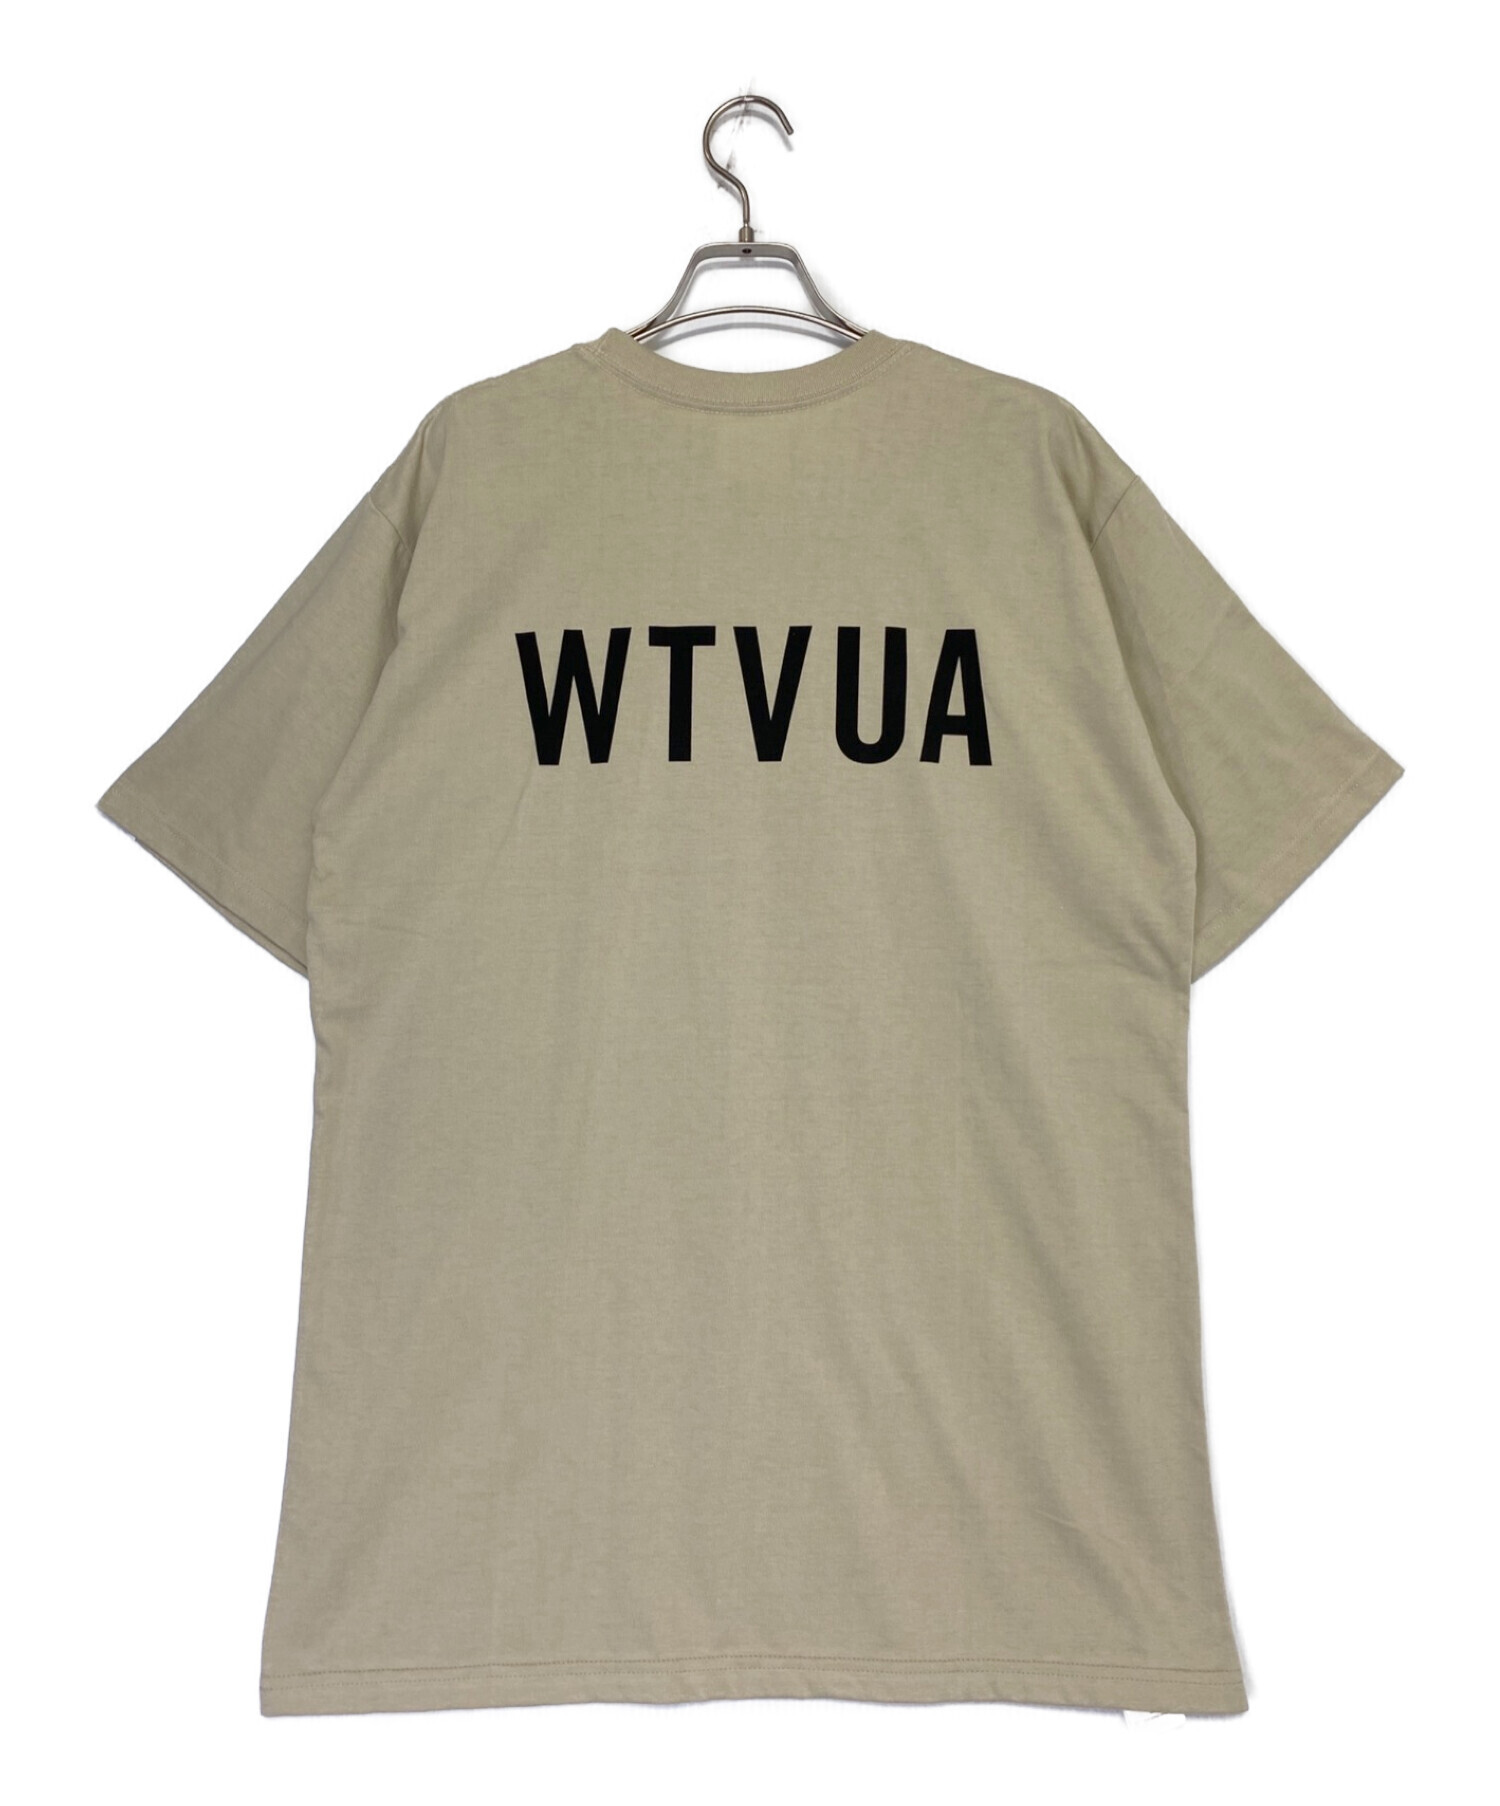 WTAPS (ダブルタップス) WTVUA TEE ベージュ サイズ:X03